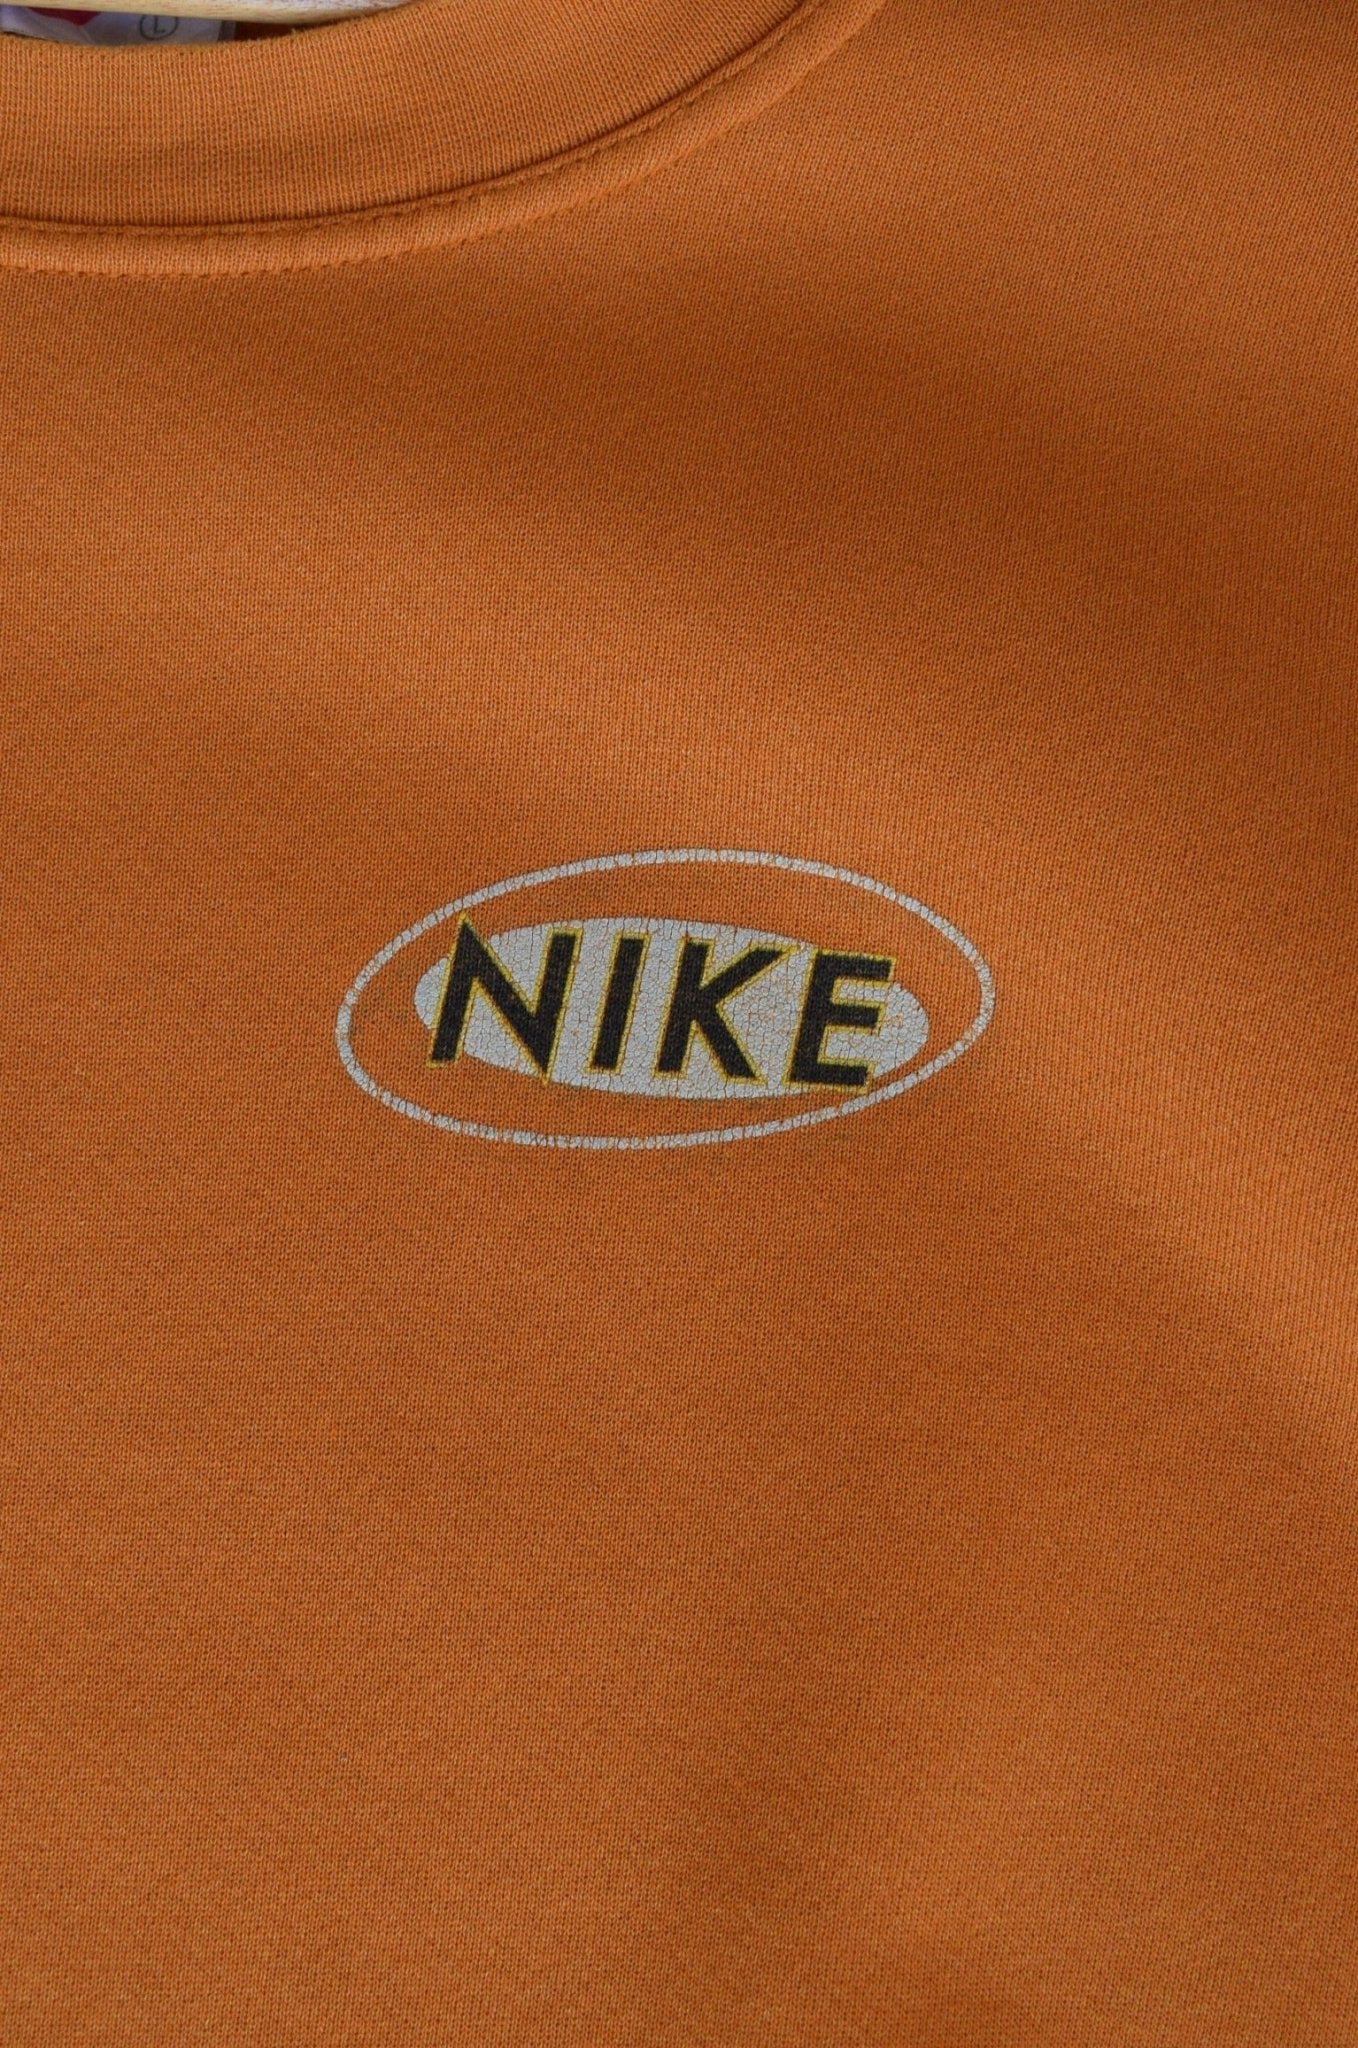 Vintage 90s Nike Spellout Crewneck (L/XL) - Retrospective Store